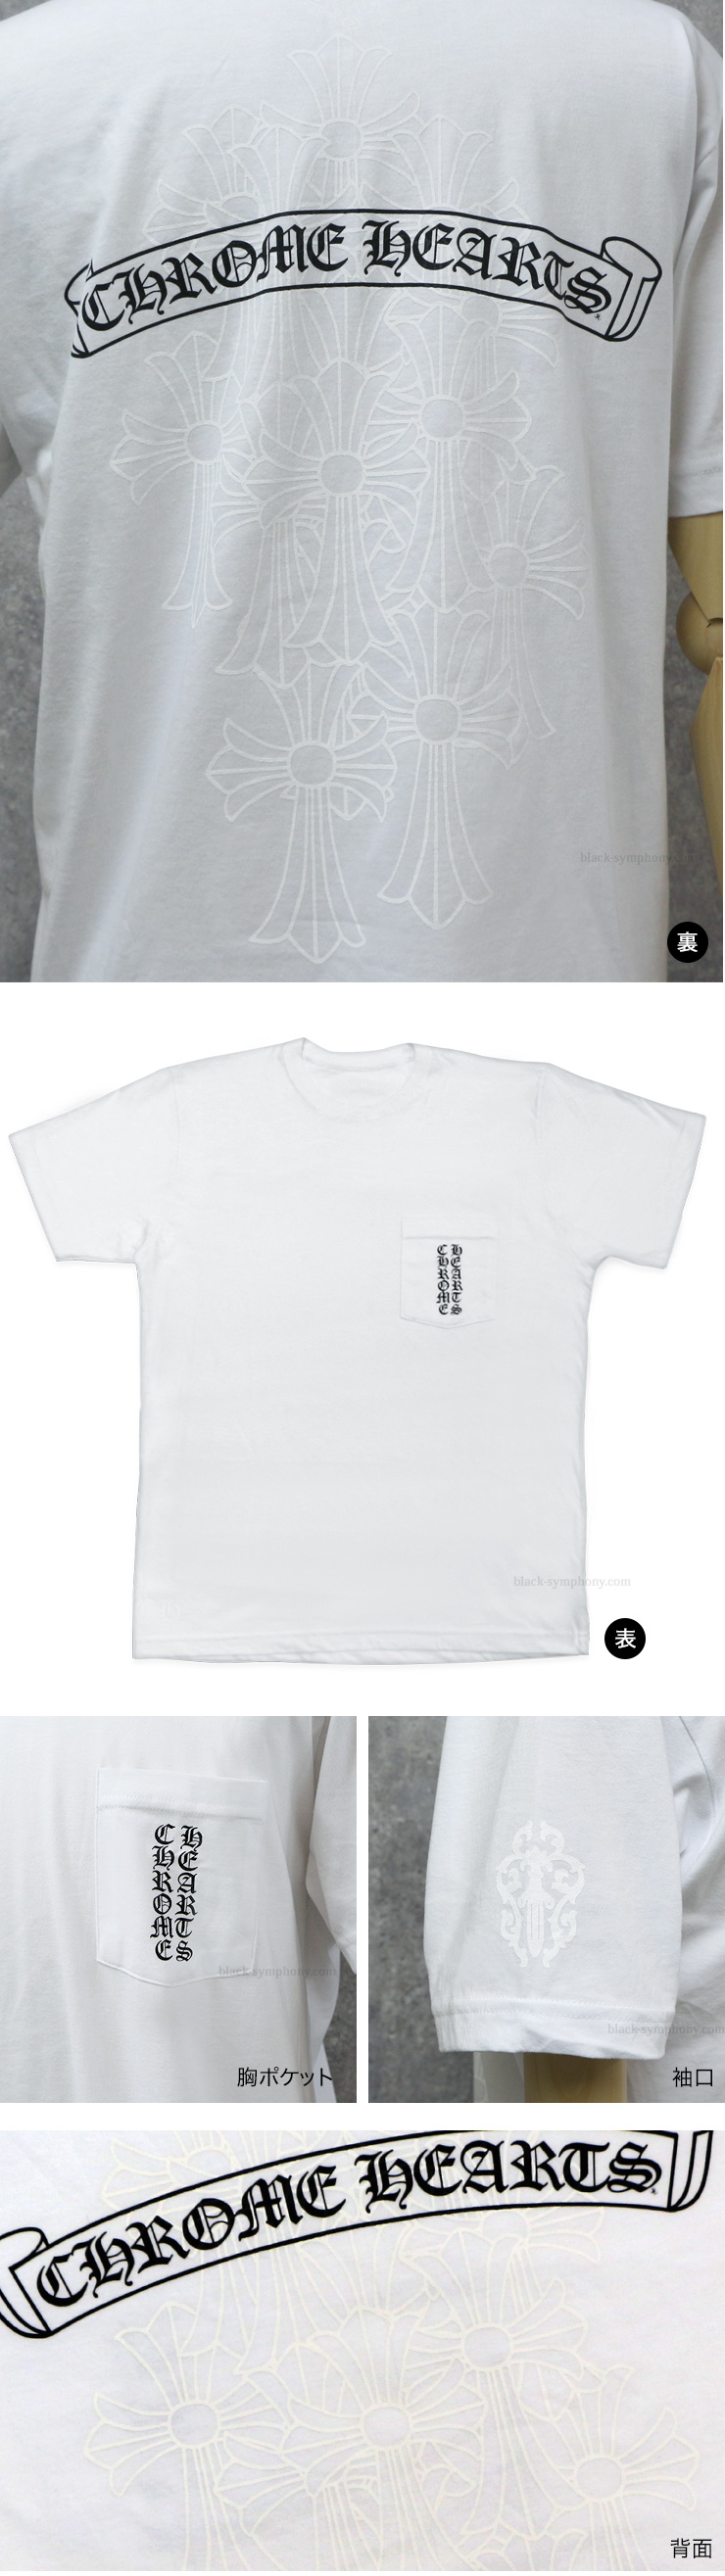 ChromeHearts クロムハーツ メンズハーフスリーブポケットTシャツ スクロールラベル/セメタリークロス ホワイト